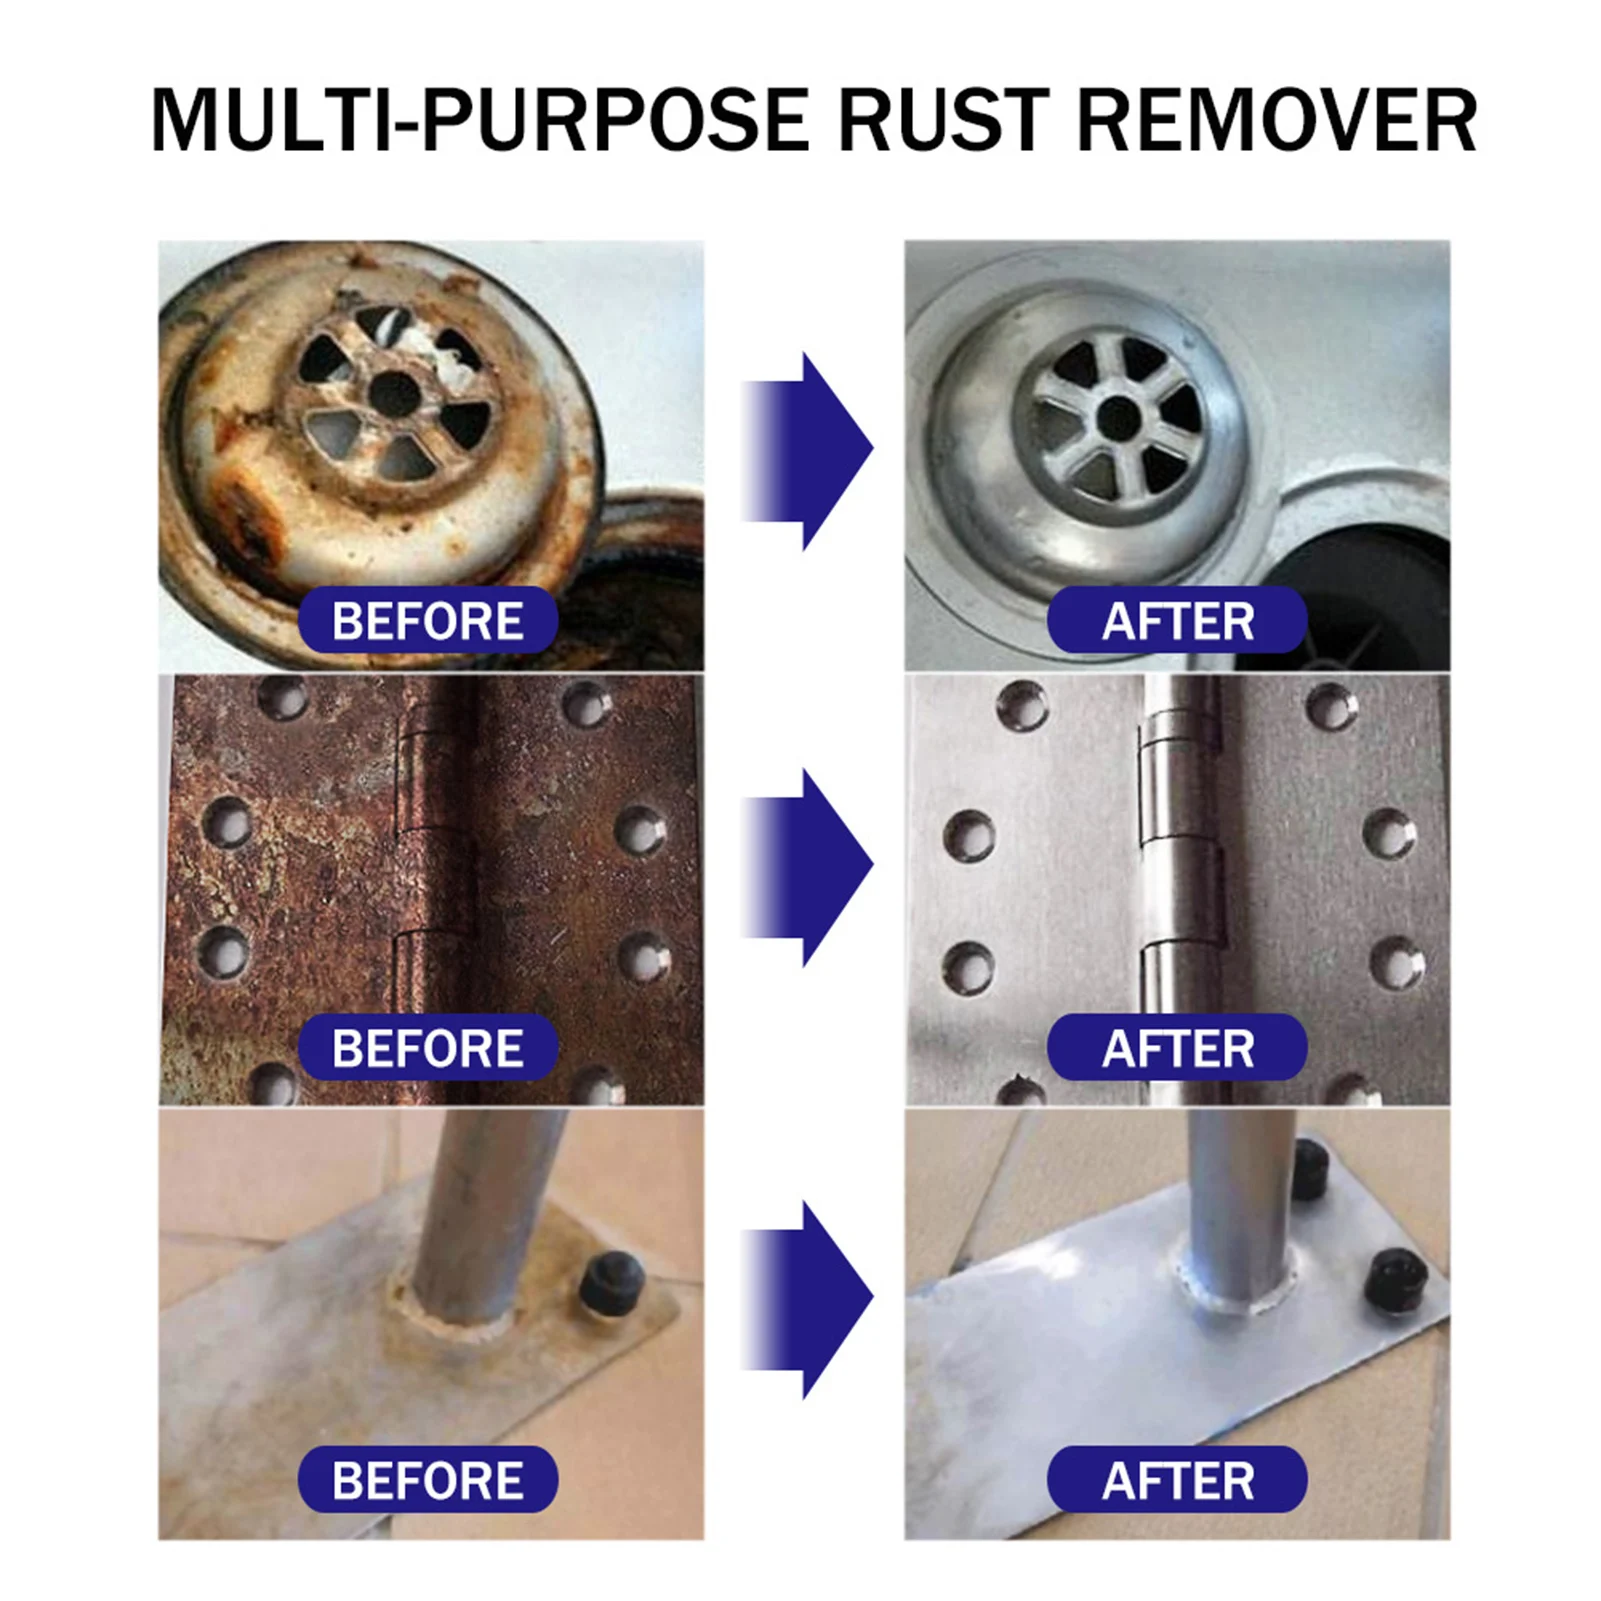 Rust cleaner spray как пользоваться фото 41